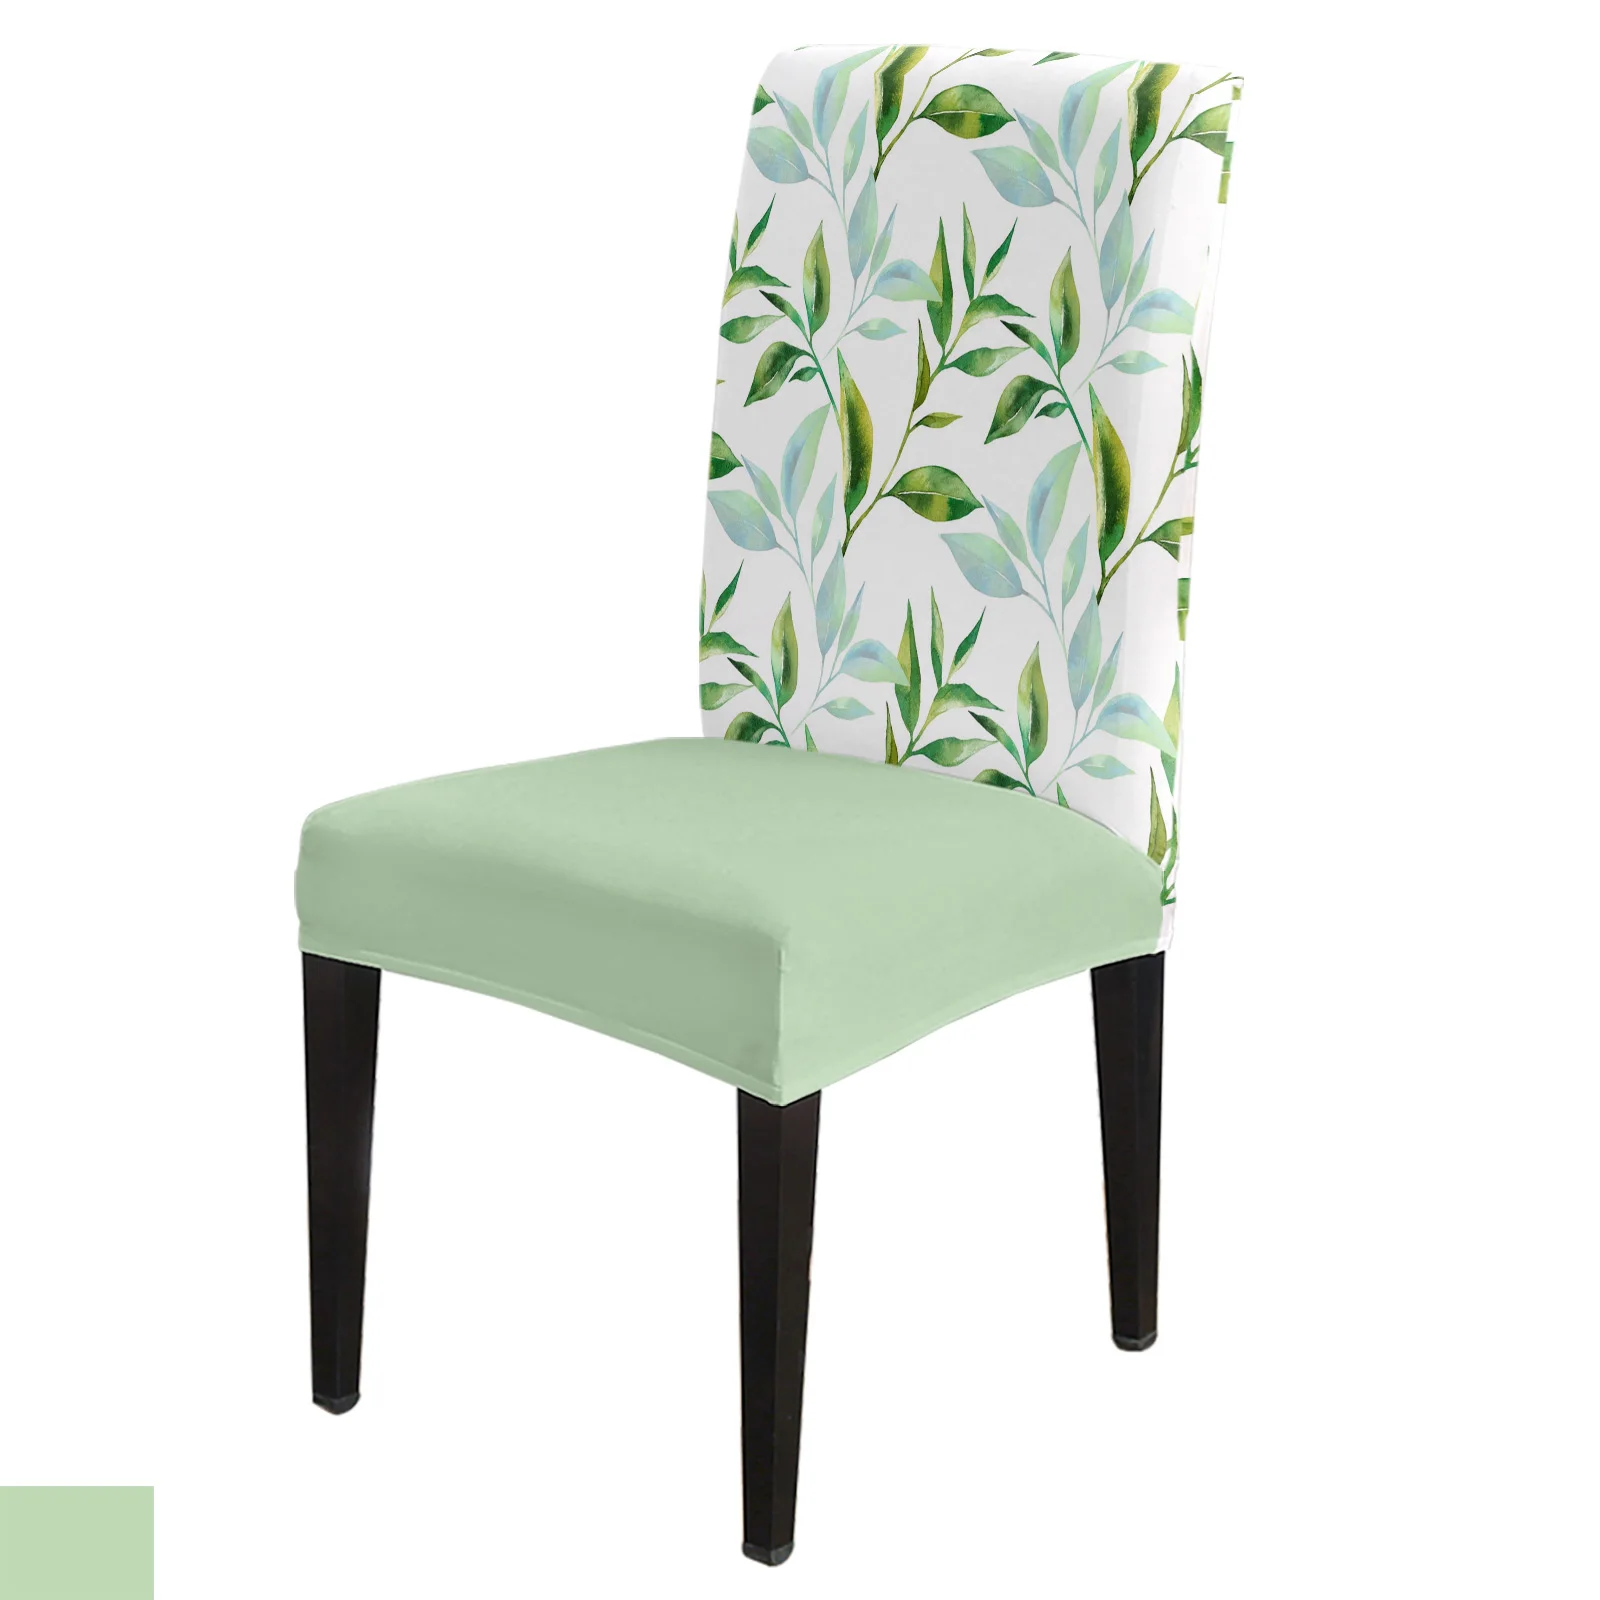 

Набор чехлов на стулья с зелеными листьями, эластичное покрытие из спандекса для кухни, столовой, банкета, свадьбы, вечеринки